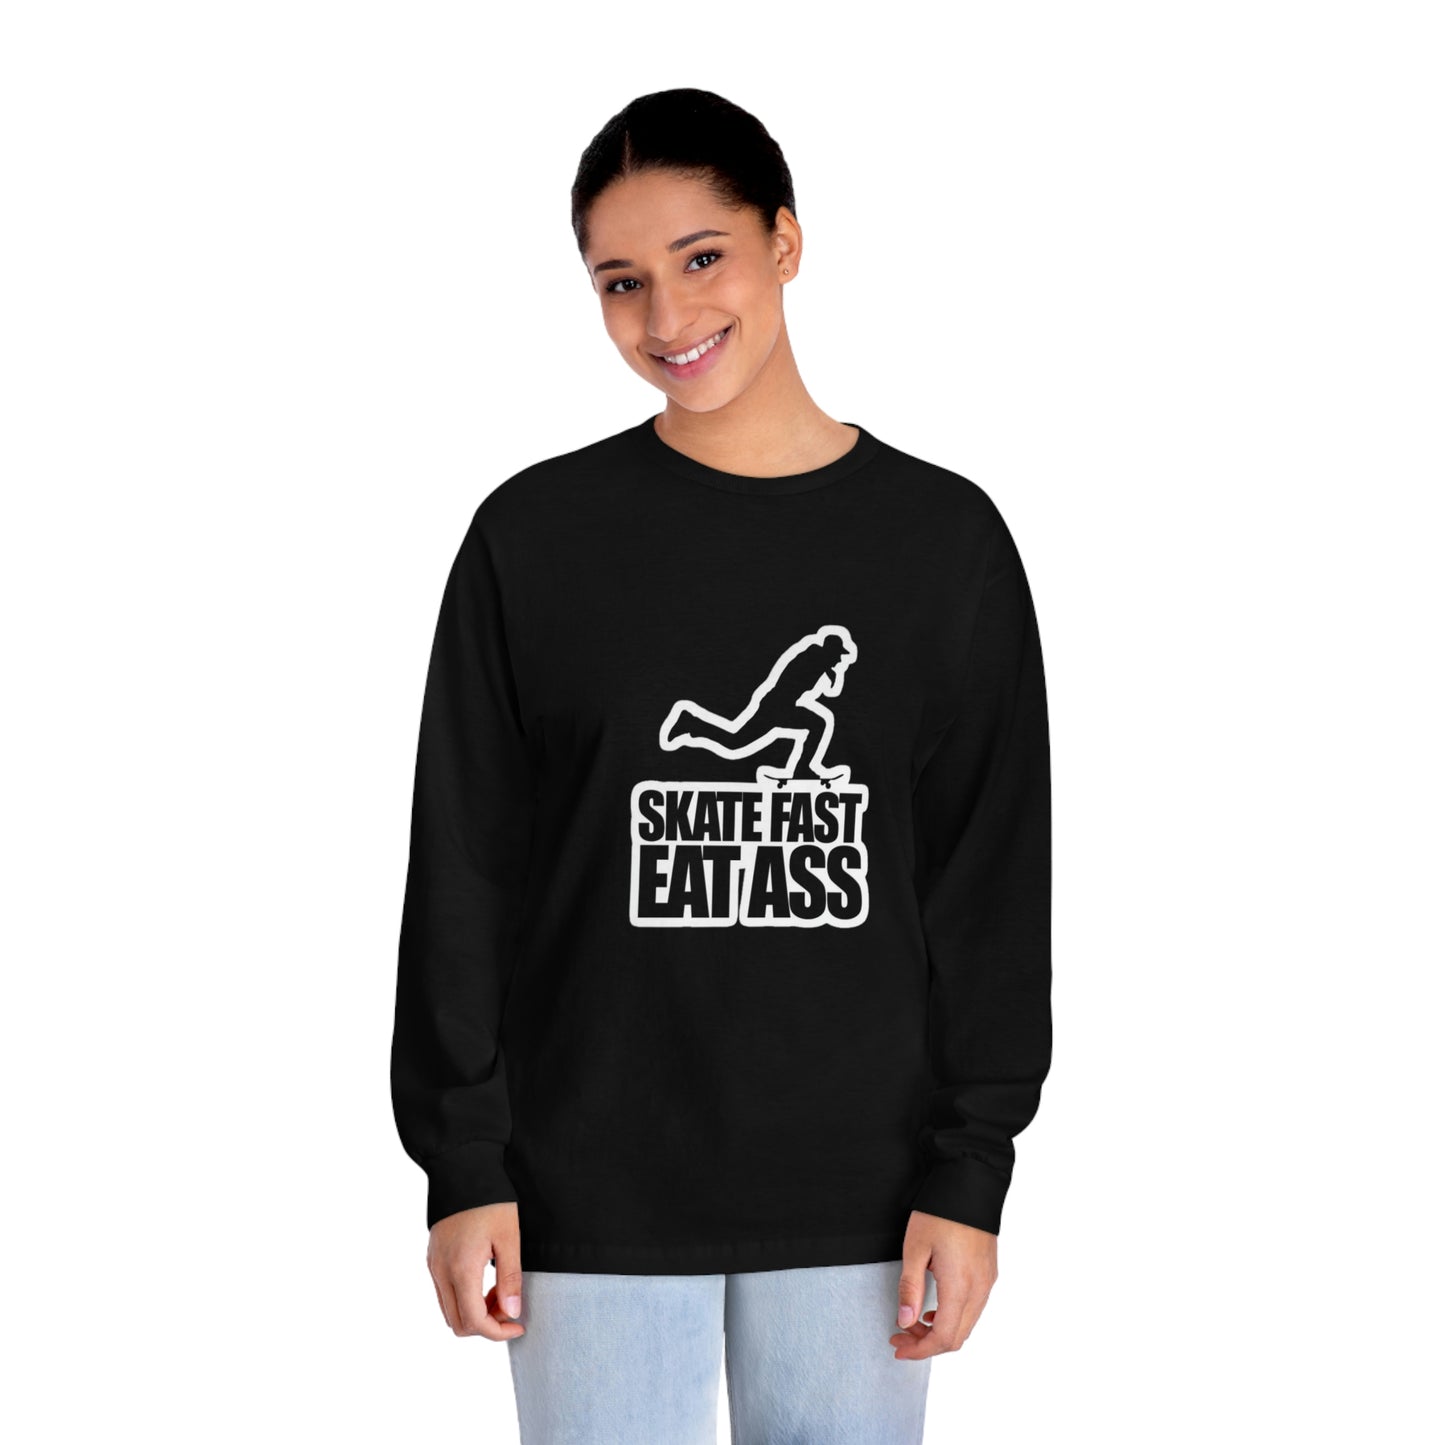 Skate Fast Eat Ass. Unisex Classic Long Sleeve T-Shirt